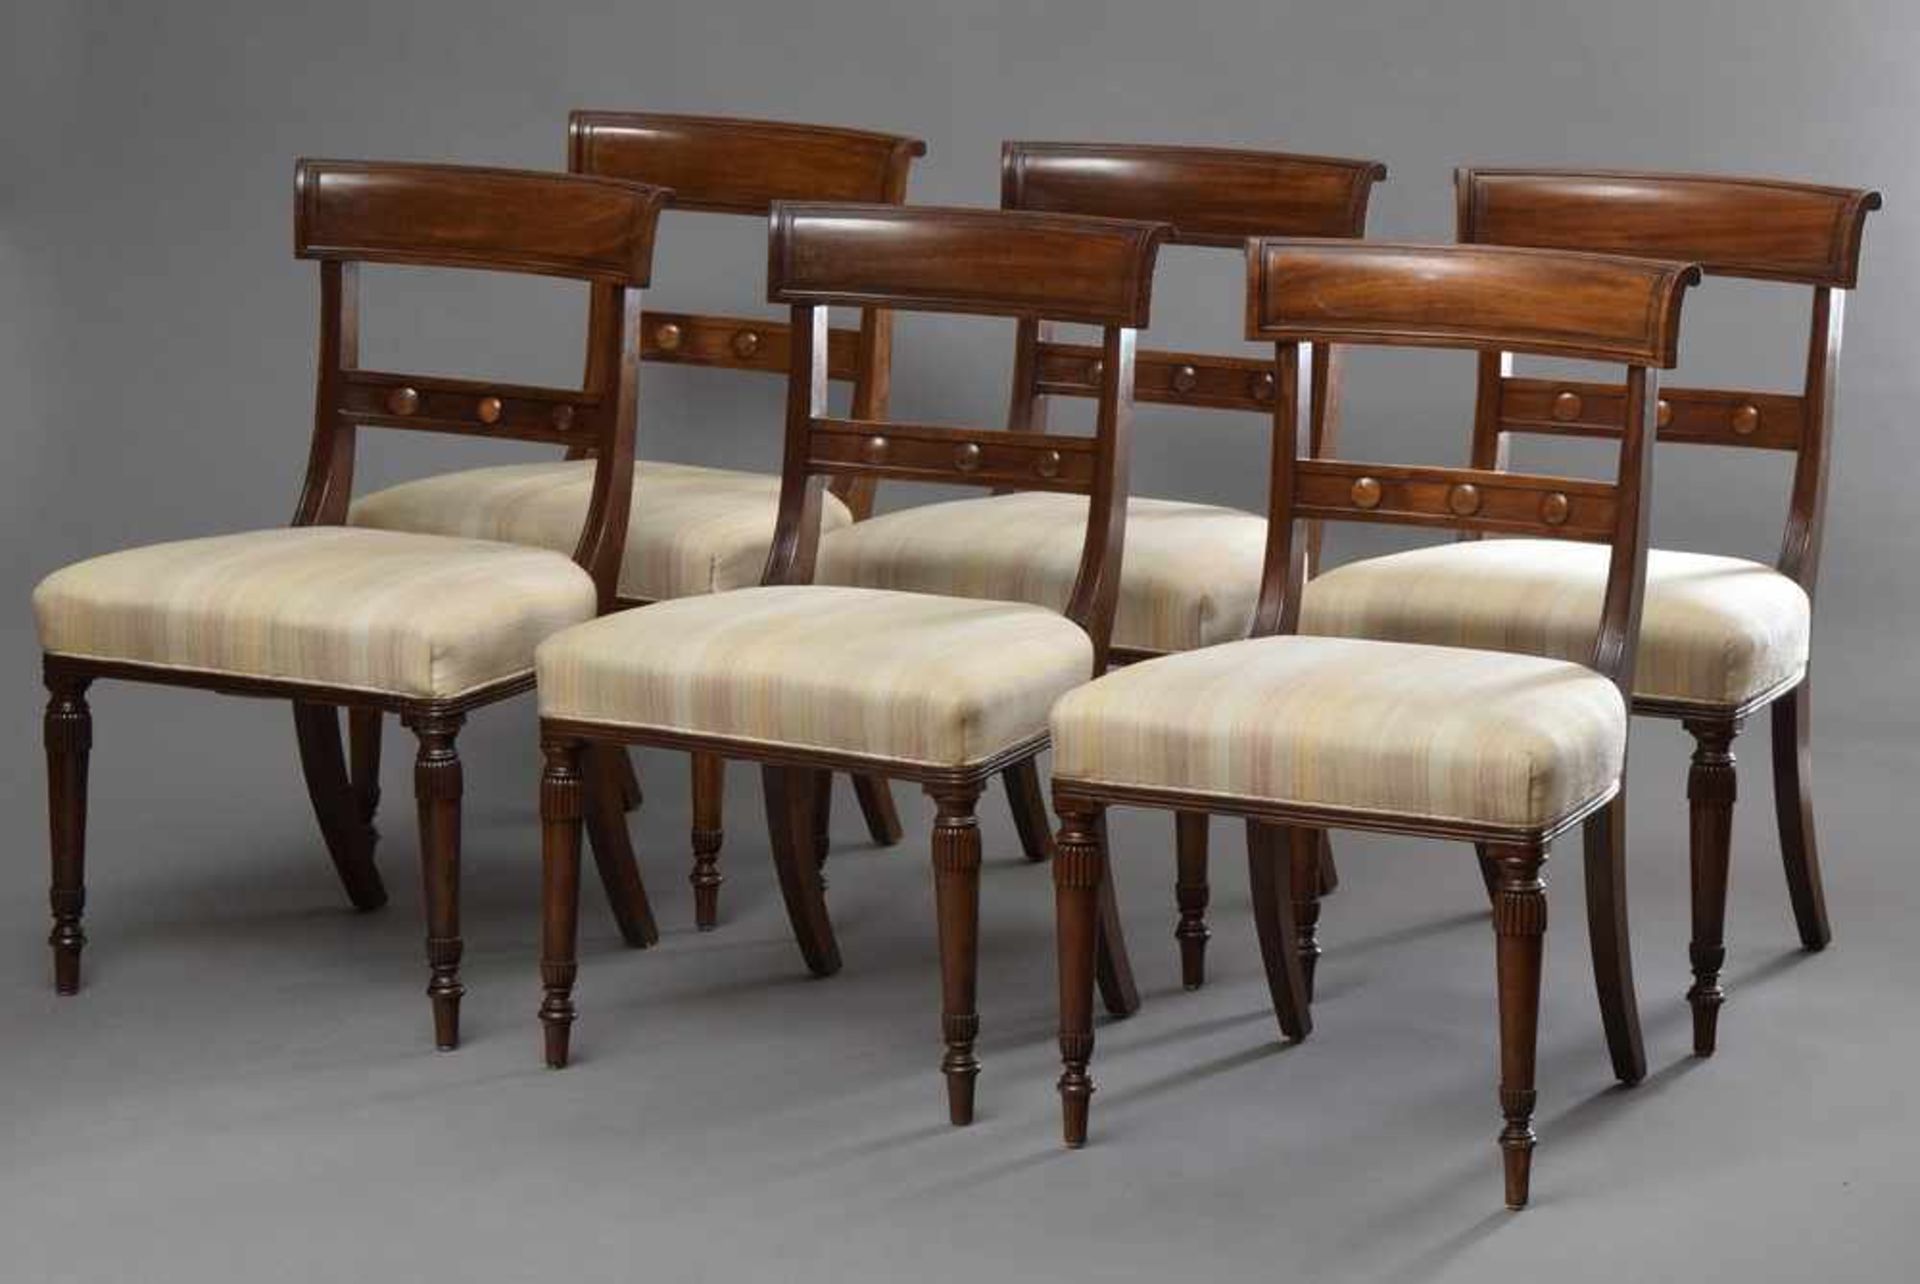 6 Englische Stühle mit beschnitzten Vorderbeinen u. Nieten Trompe l'oeil in den Lehnen, massiv